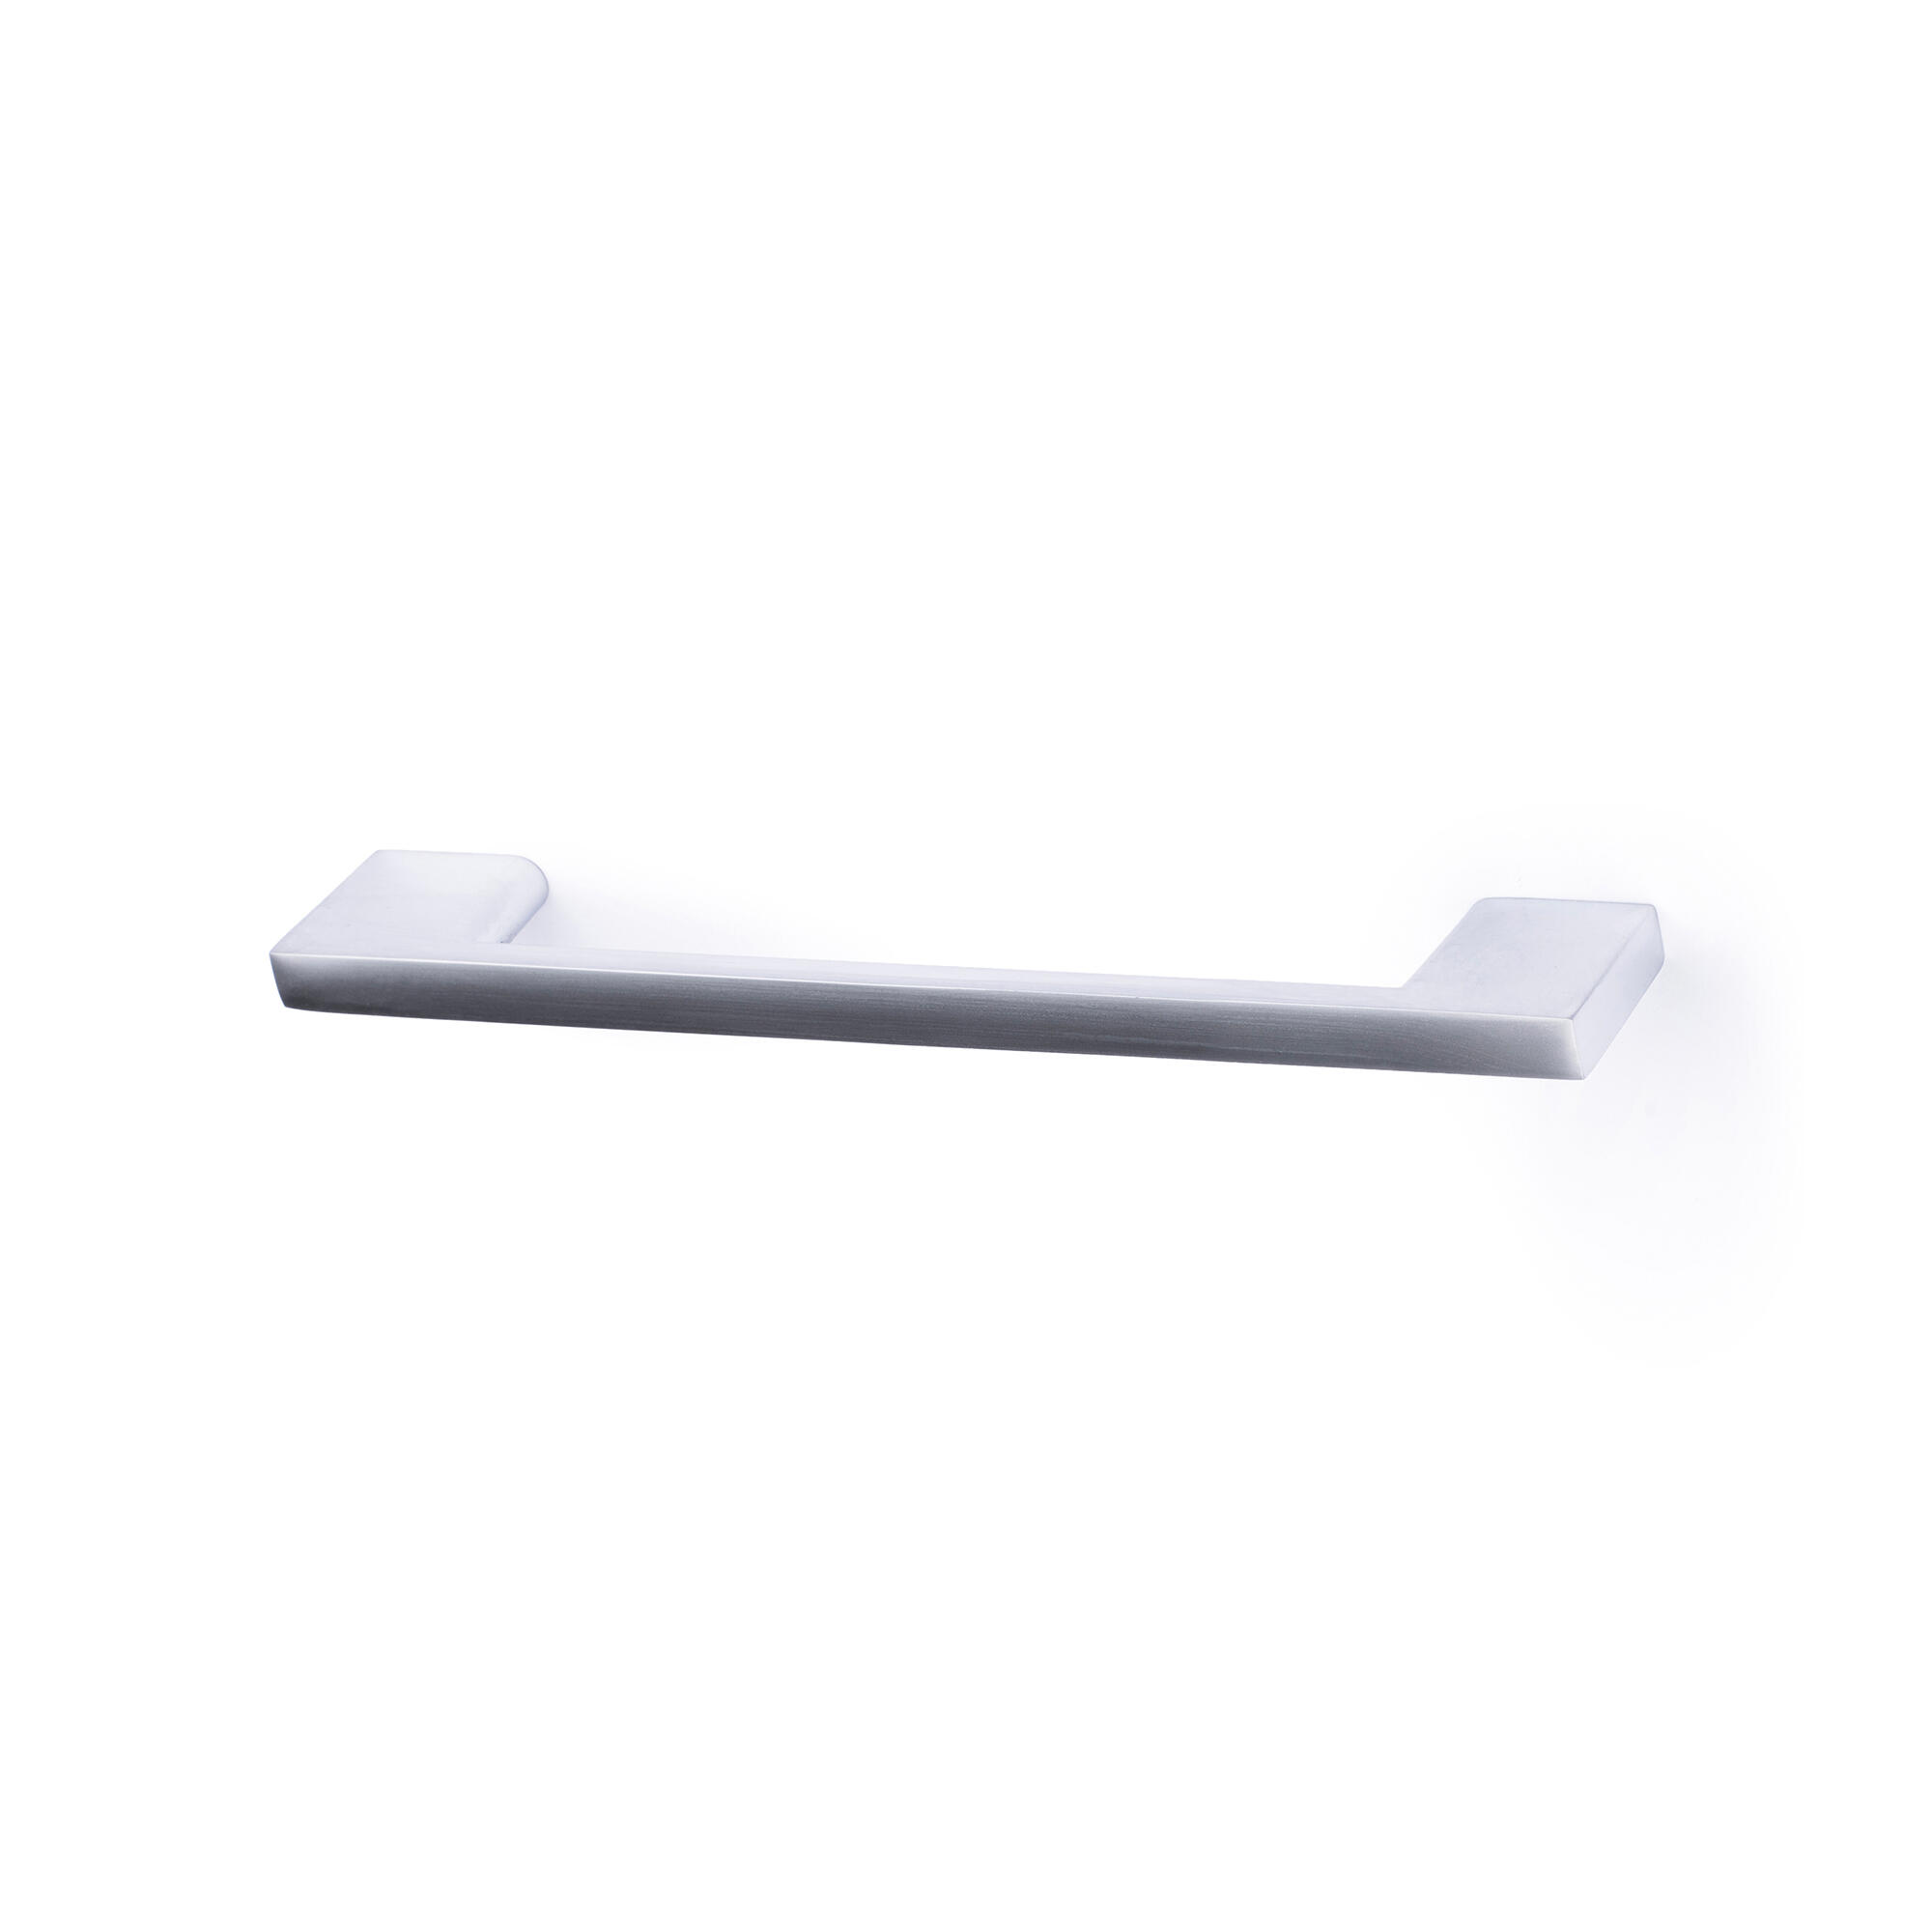 Tirador de mueble REI gris / plata distancia entre eje 96 mm